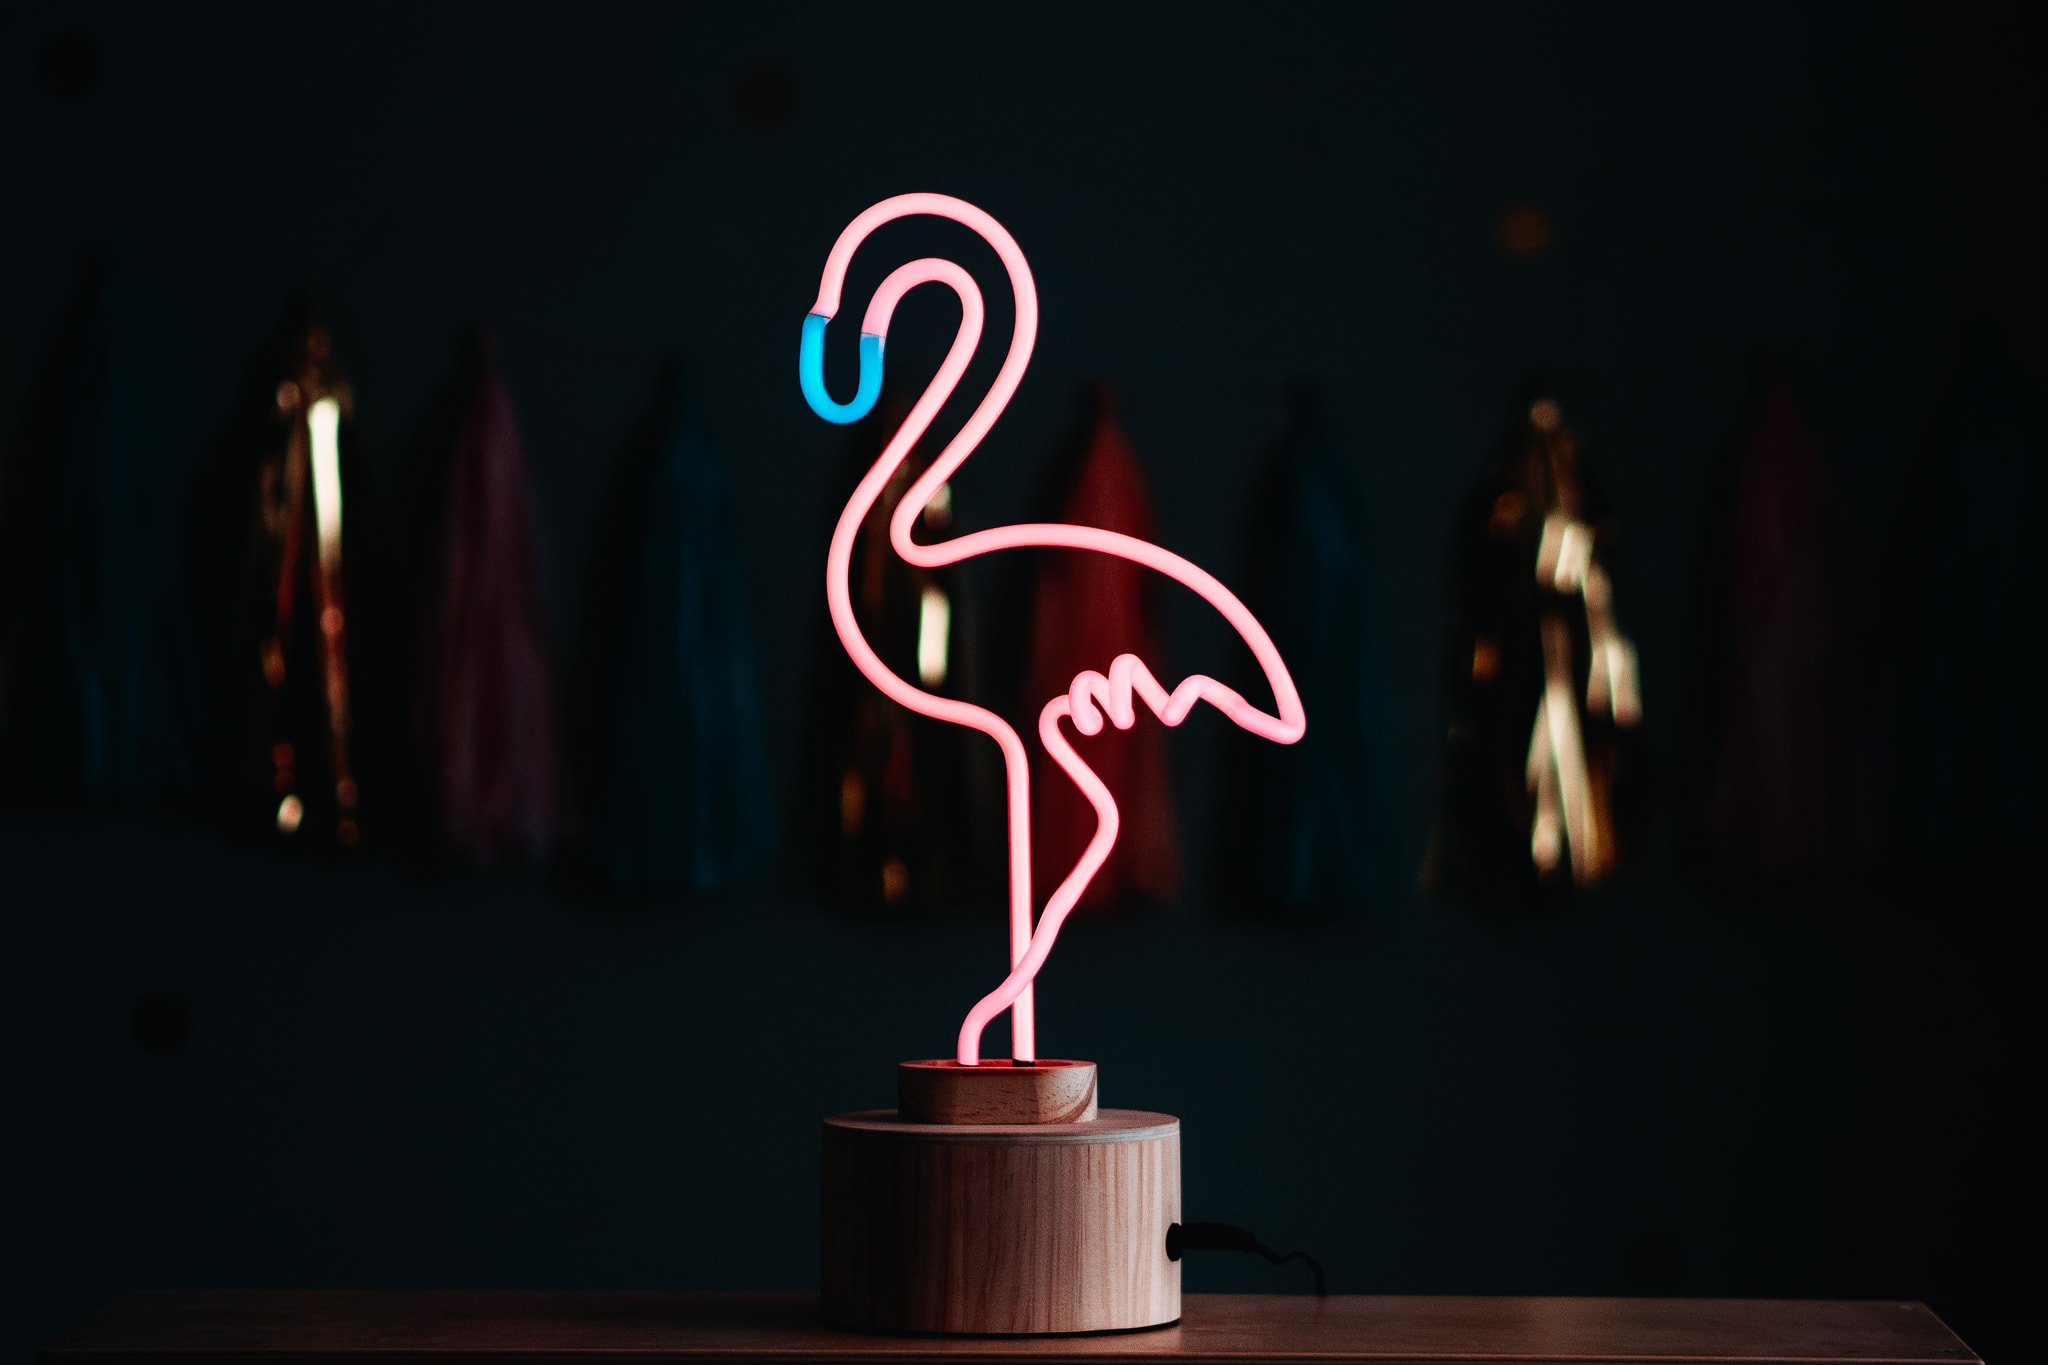 Flamingo light